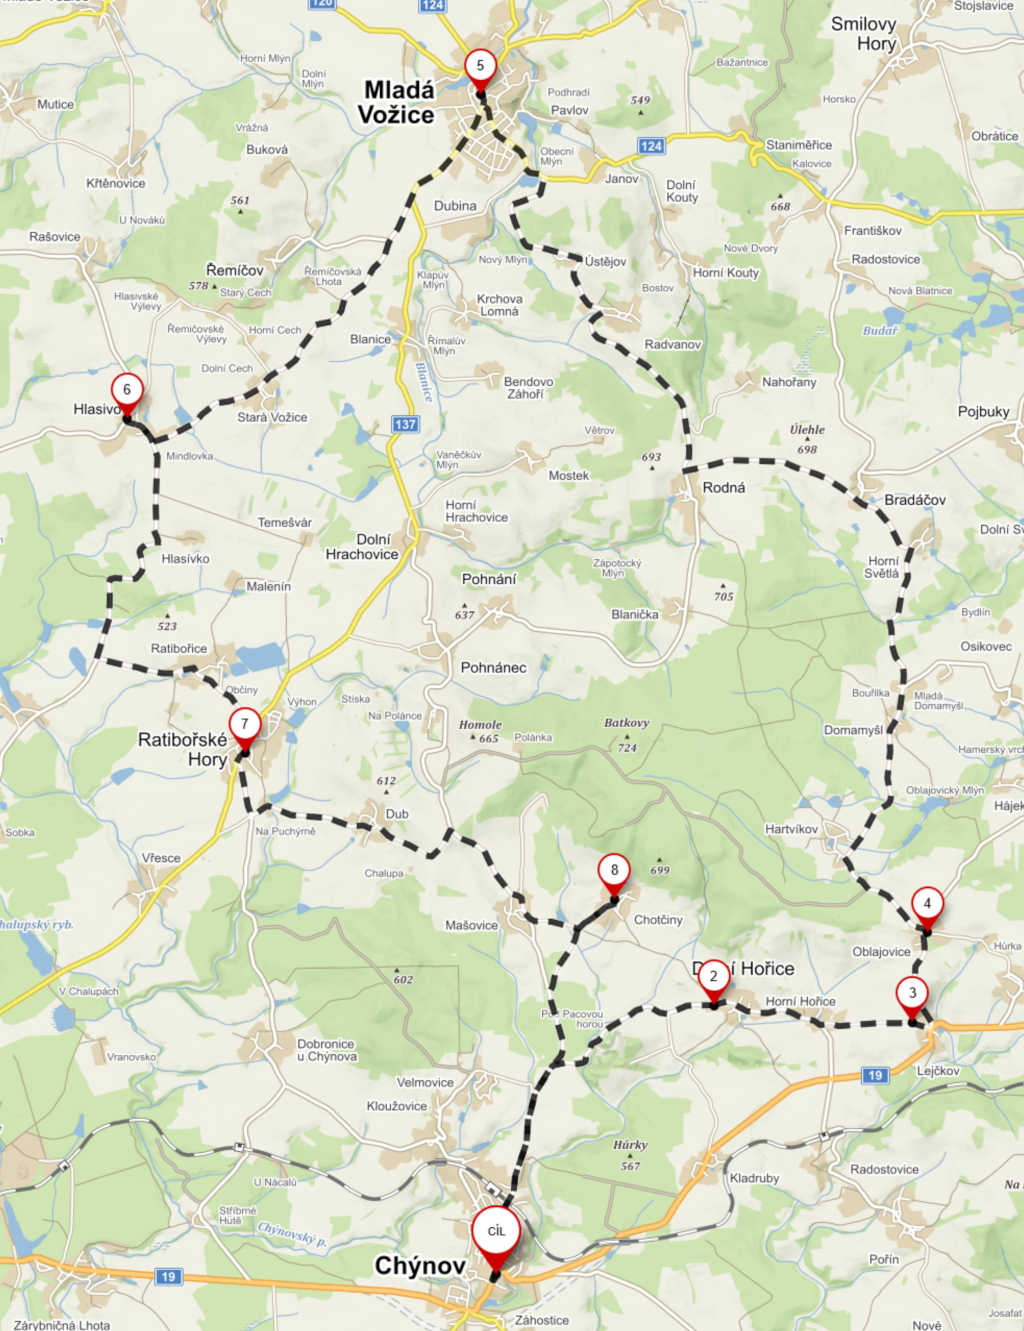 mapa trasa vyjizdka 2019 1